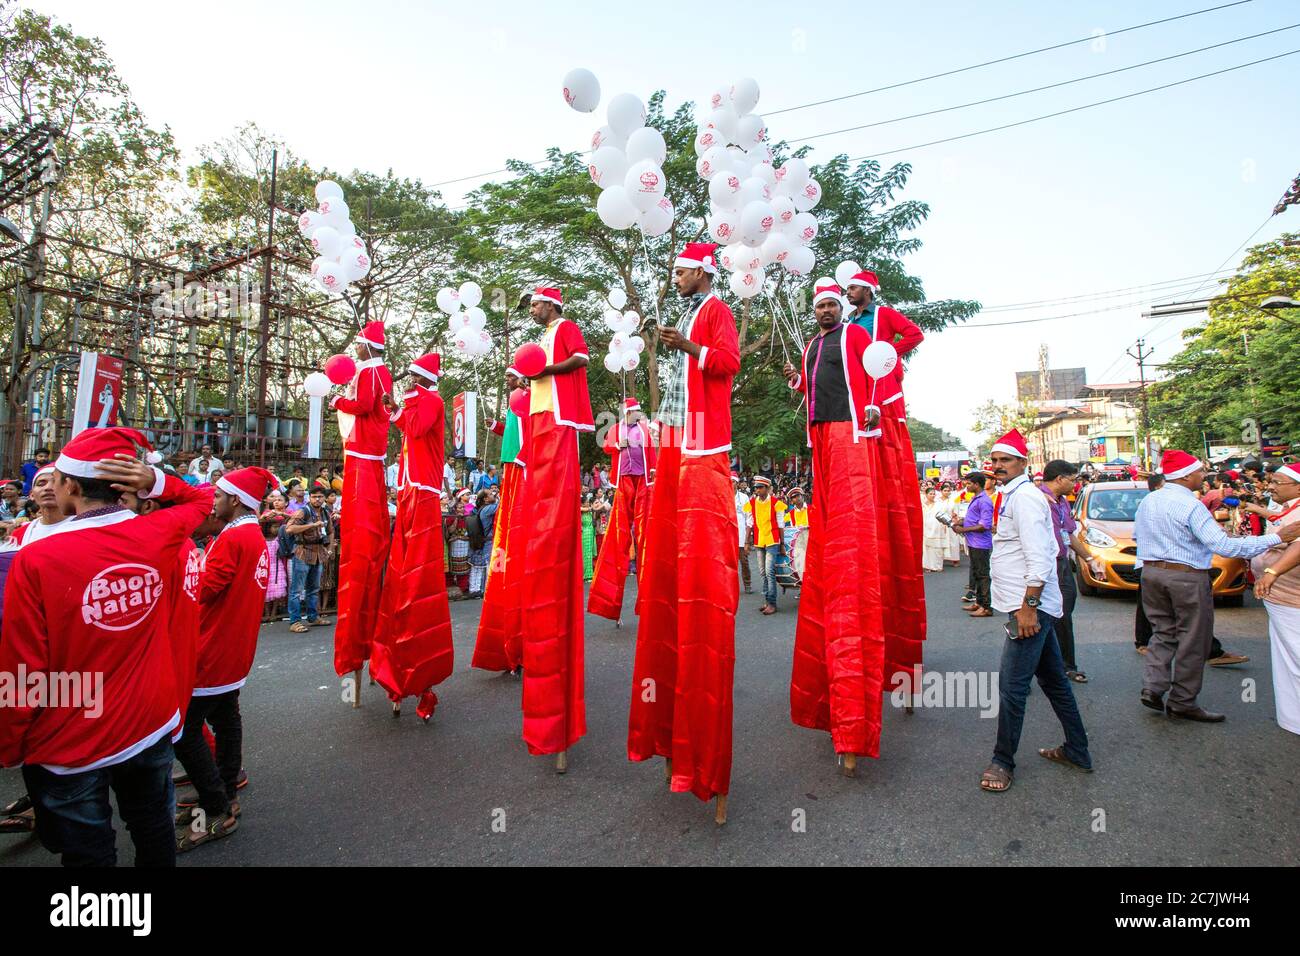 Farbenfroh nach Santa's flashmob von Buon Natale Weihnachten fest Thrissur 2017, thrissur, Kerala, Indien eine einzigartige Weihnachtsfeier whe Stockfoto